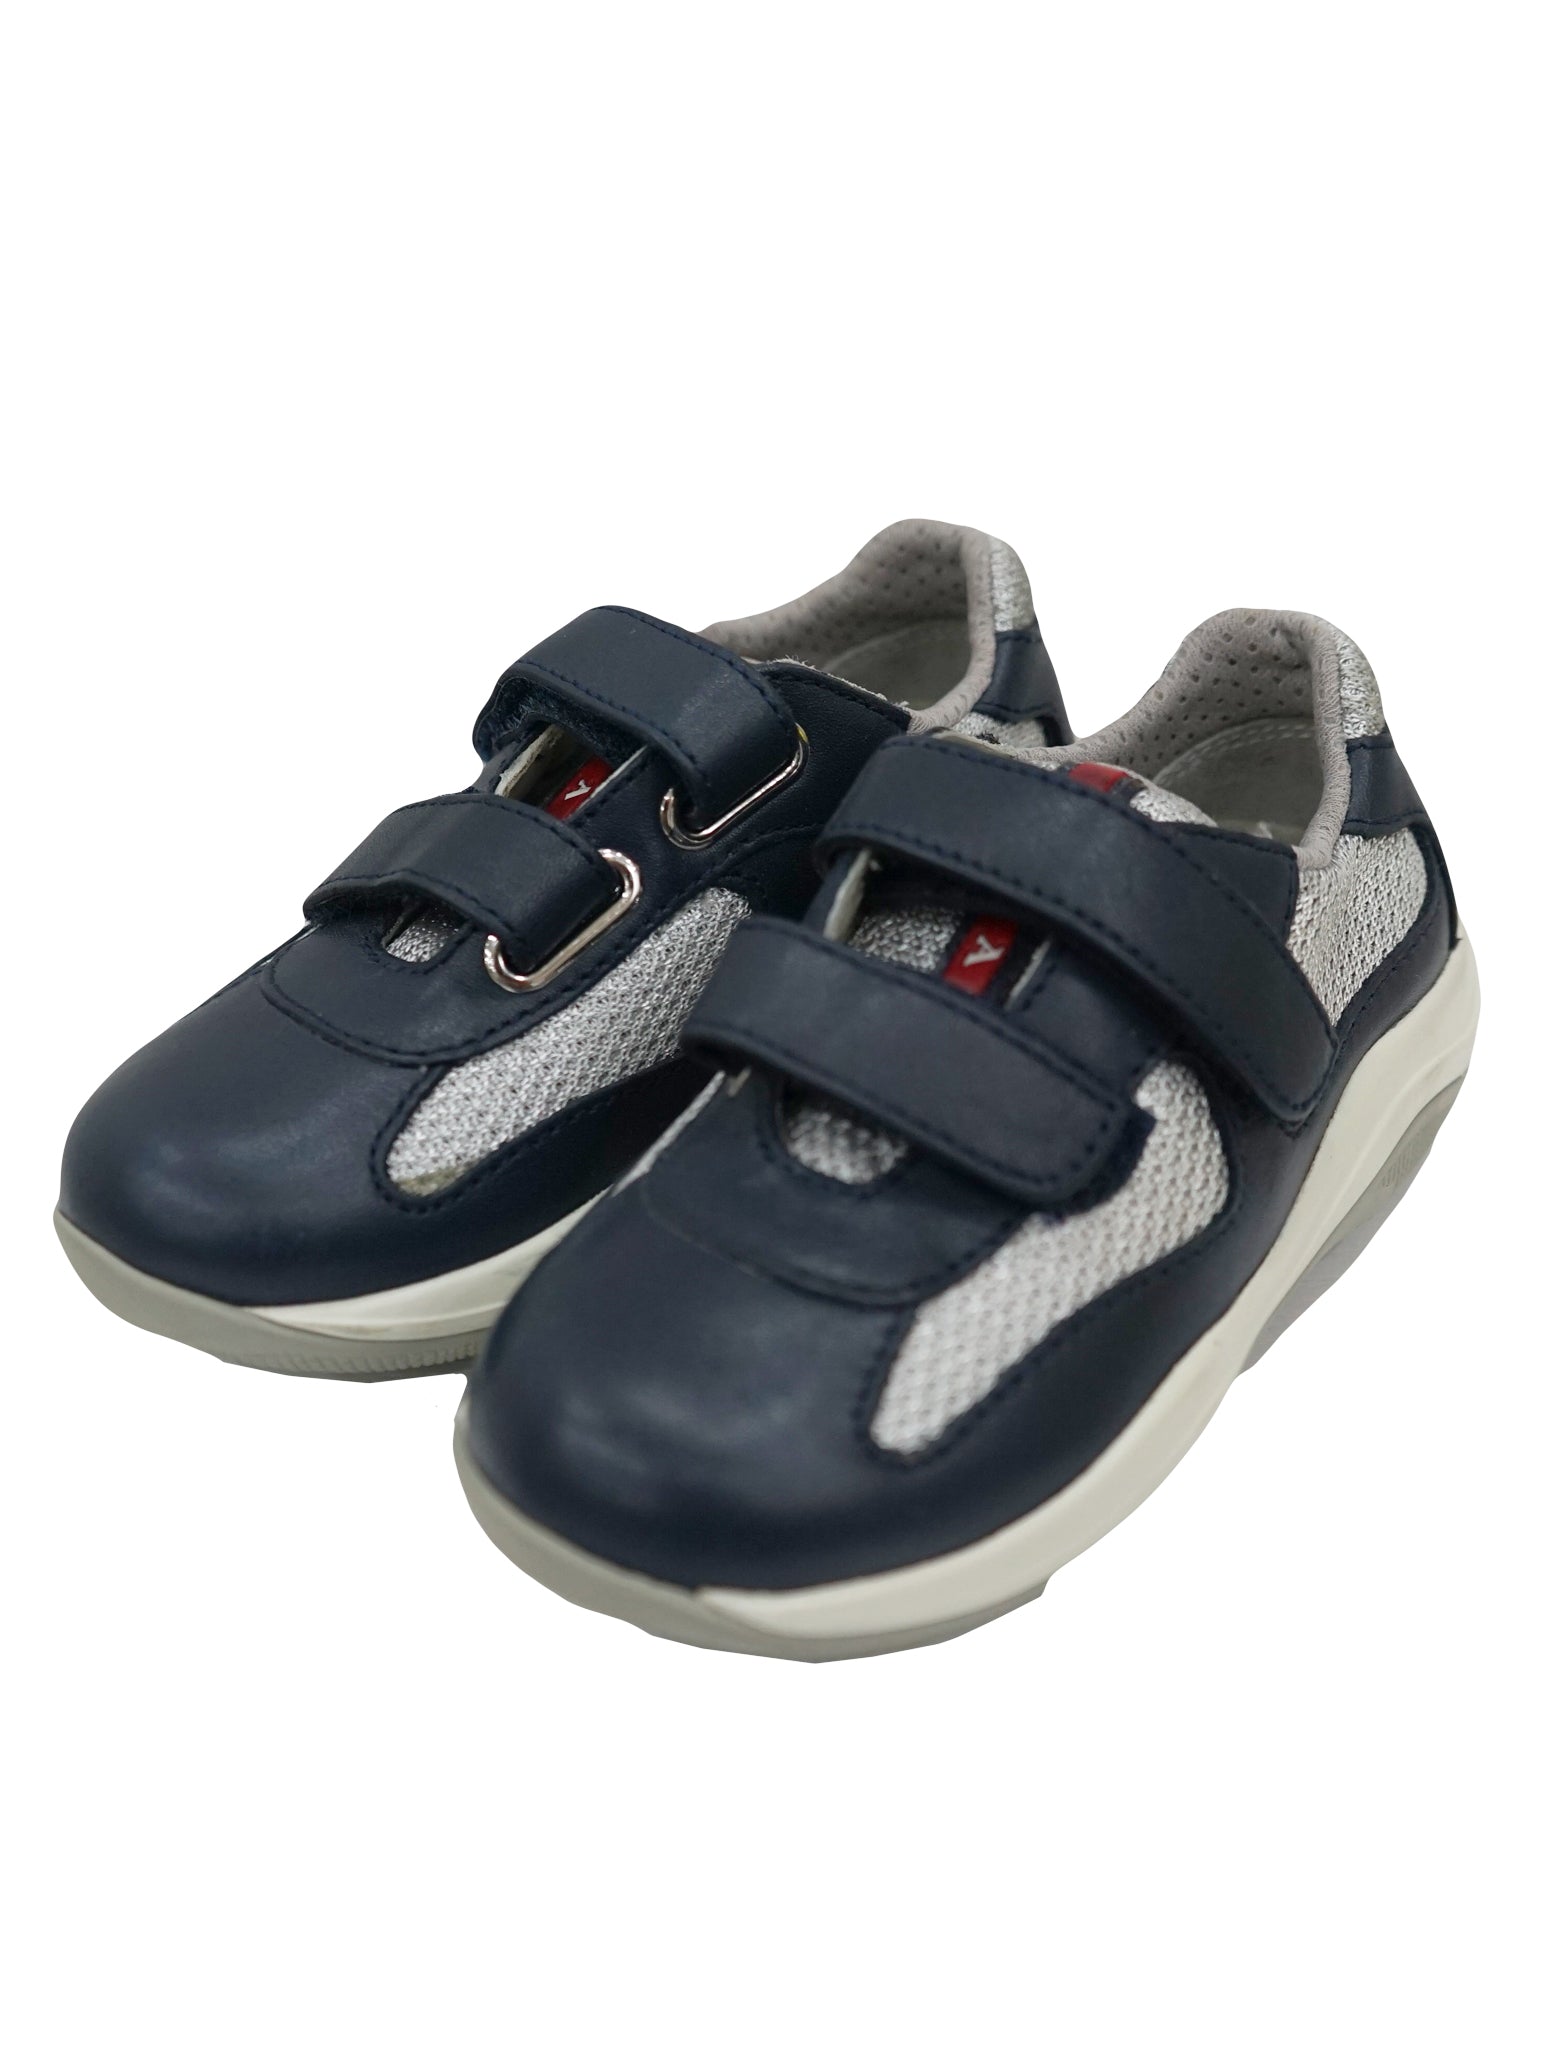 infant prada shoes